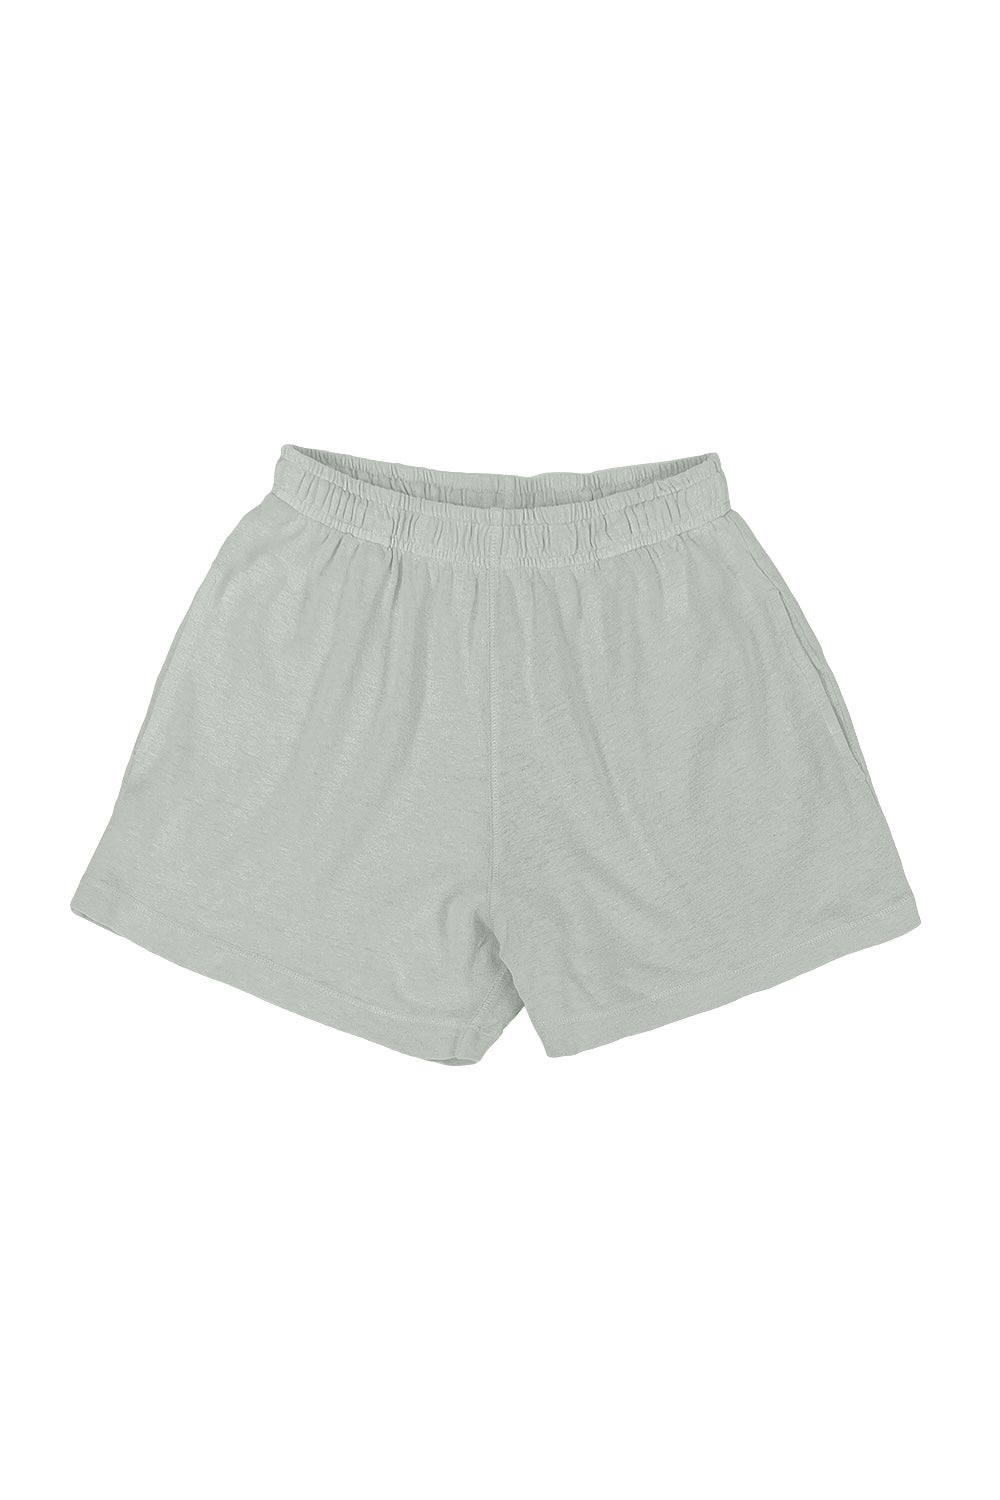 SUN Linen Jogger Pants - XS / Short